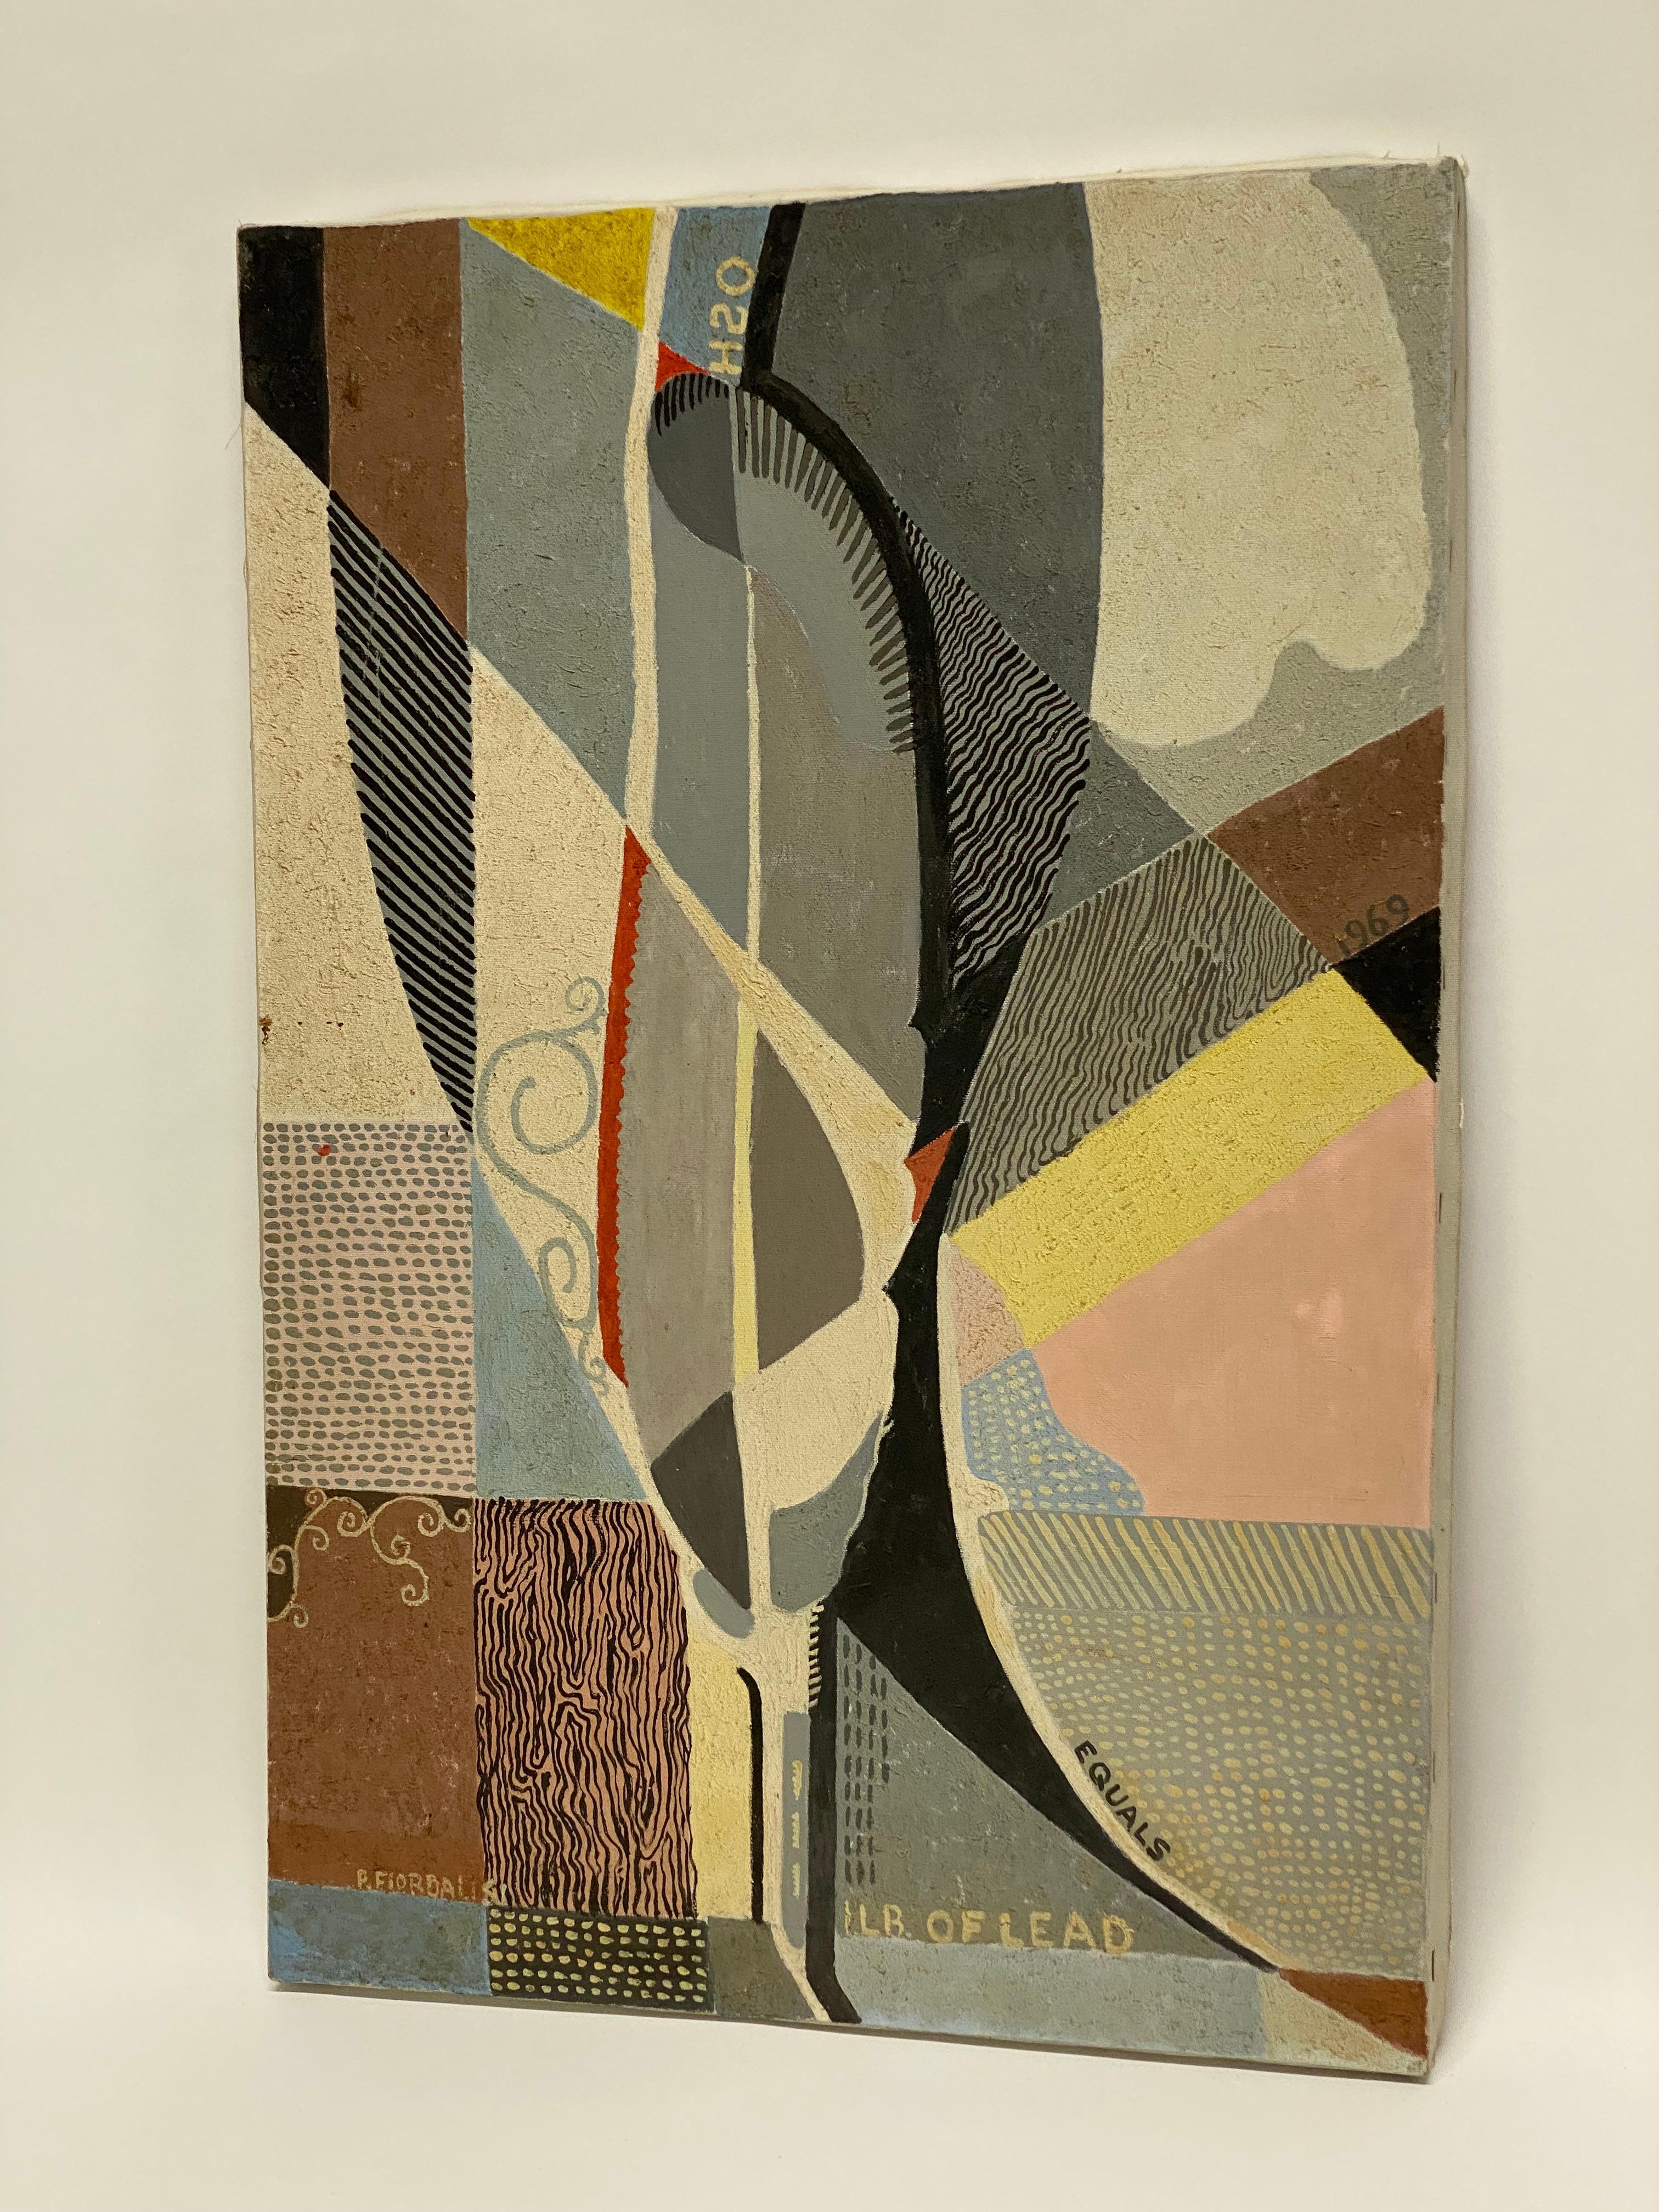 Signé en bas à gauche P. Fiordalisi (1904- ?). Peter Fiordalisi est né à Union City, dans le New Jersey, et a produit cette peinture à l'huile abstraite sur toile vers 1969. L'artiste utilise la couleur segmentée, la ligne lyrique et les mots dans